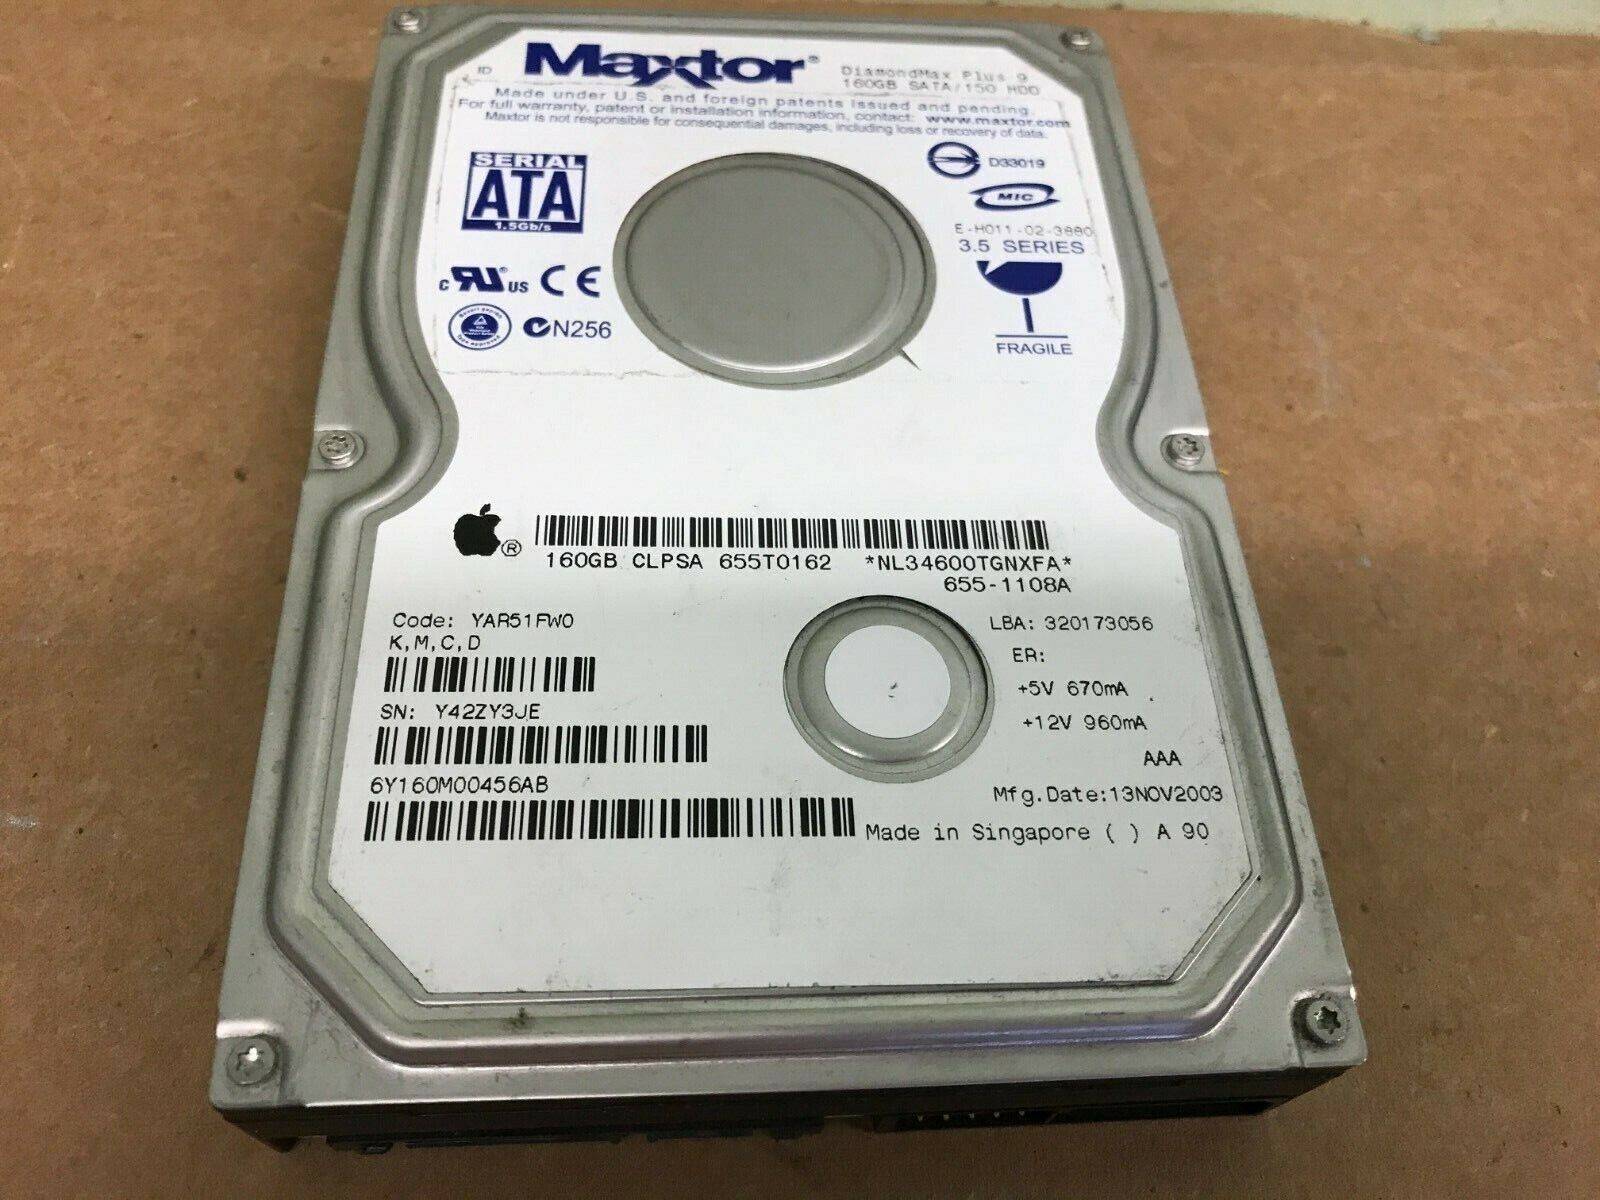 Maxtor 6Y160M0 Code:YAR51FW0 (K,M,C,D) Apple#655-1108A 3.5